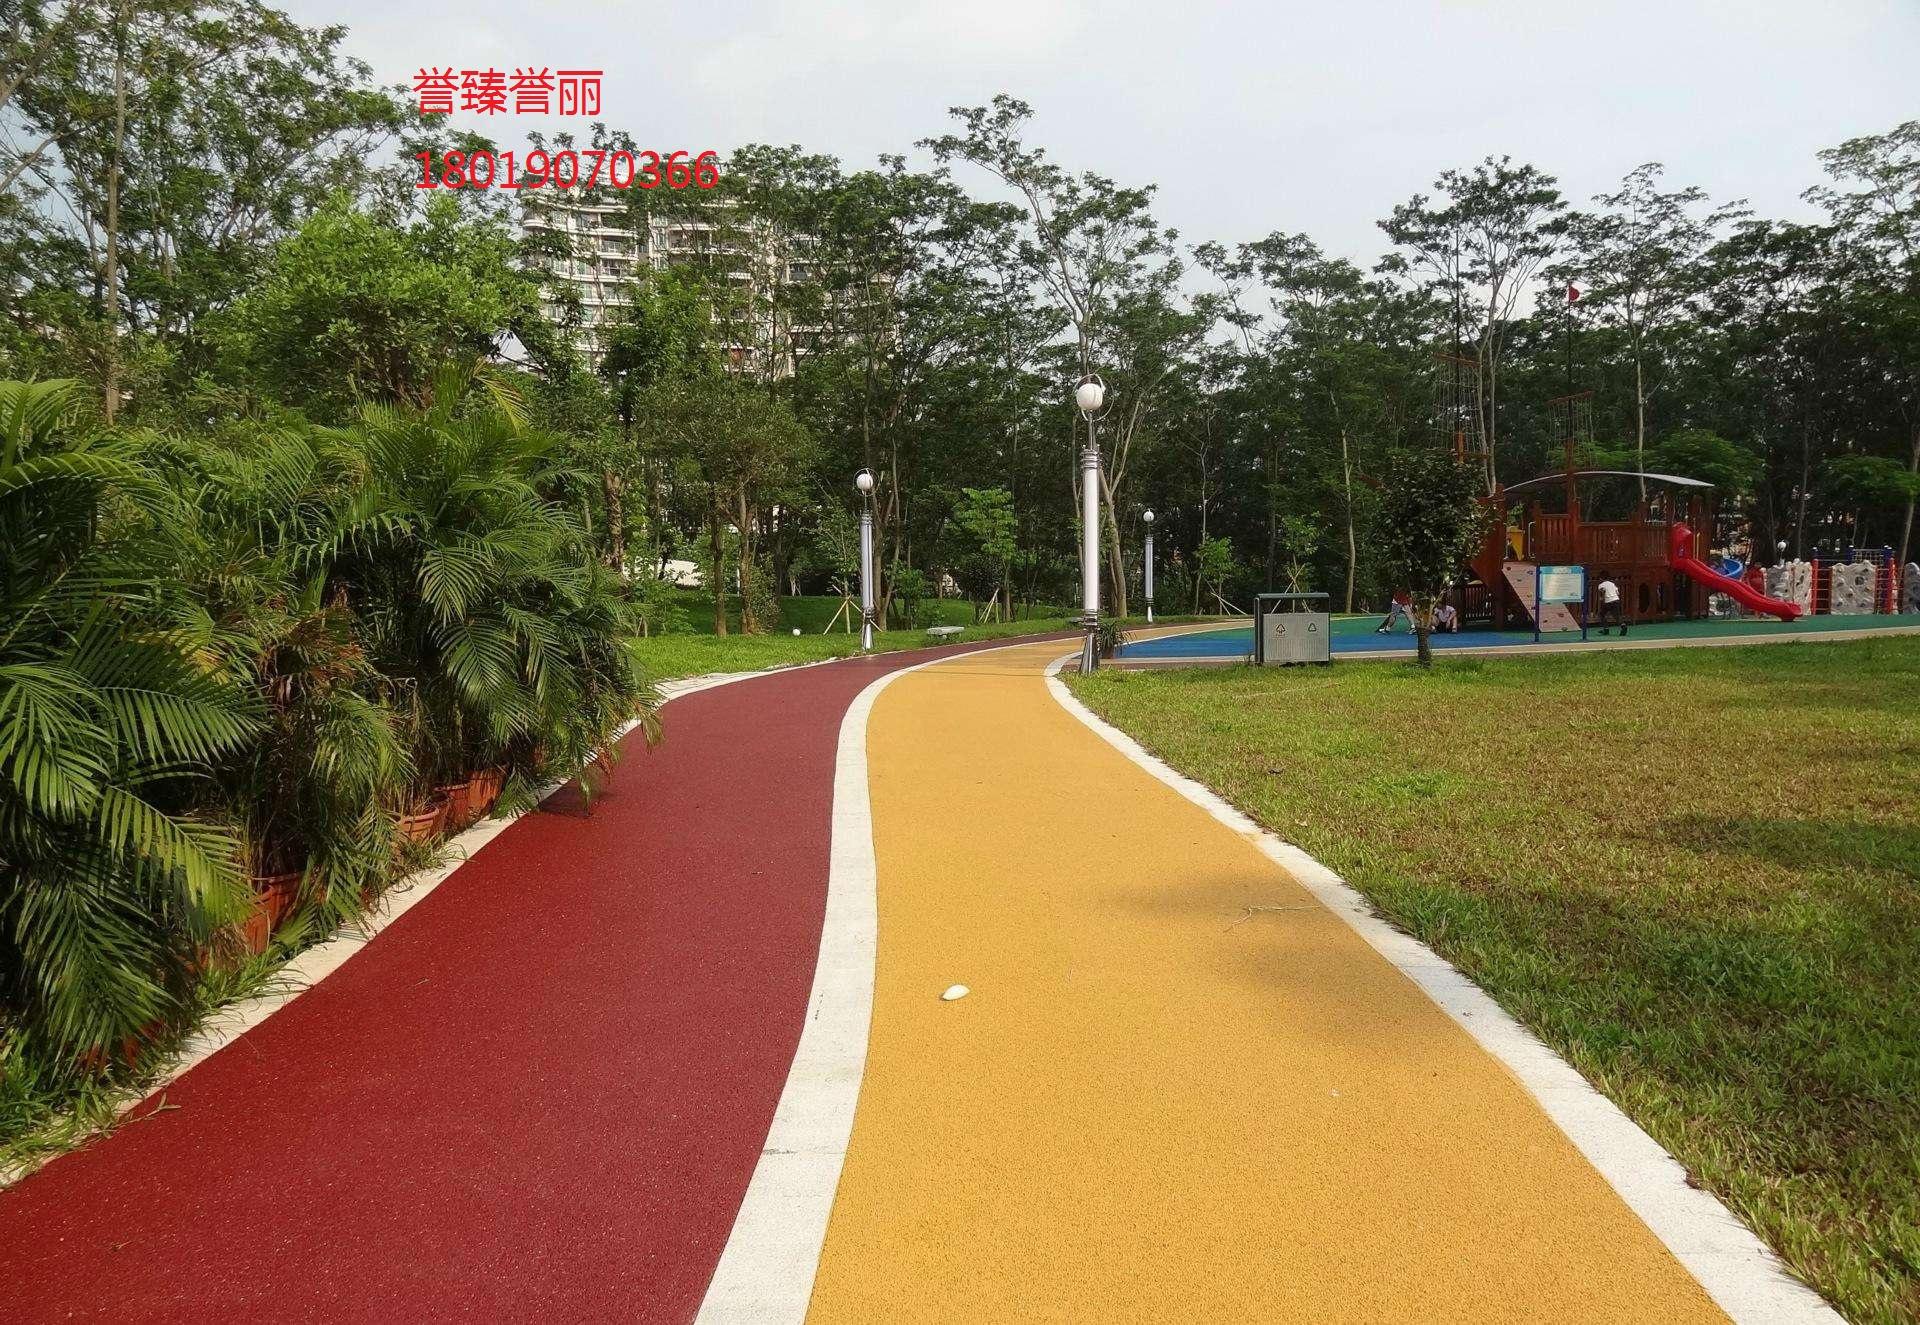 广东彩色地坪-彩色密封固化剂地坪的应用